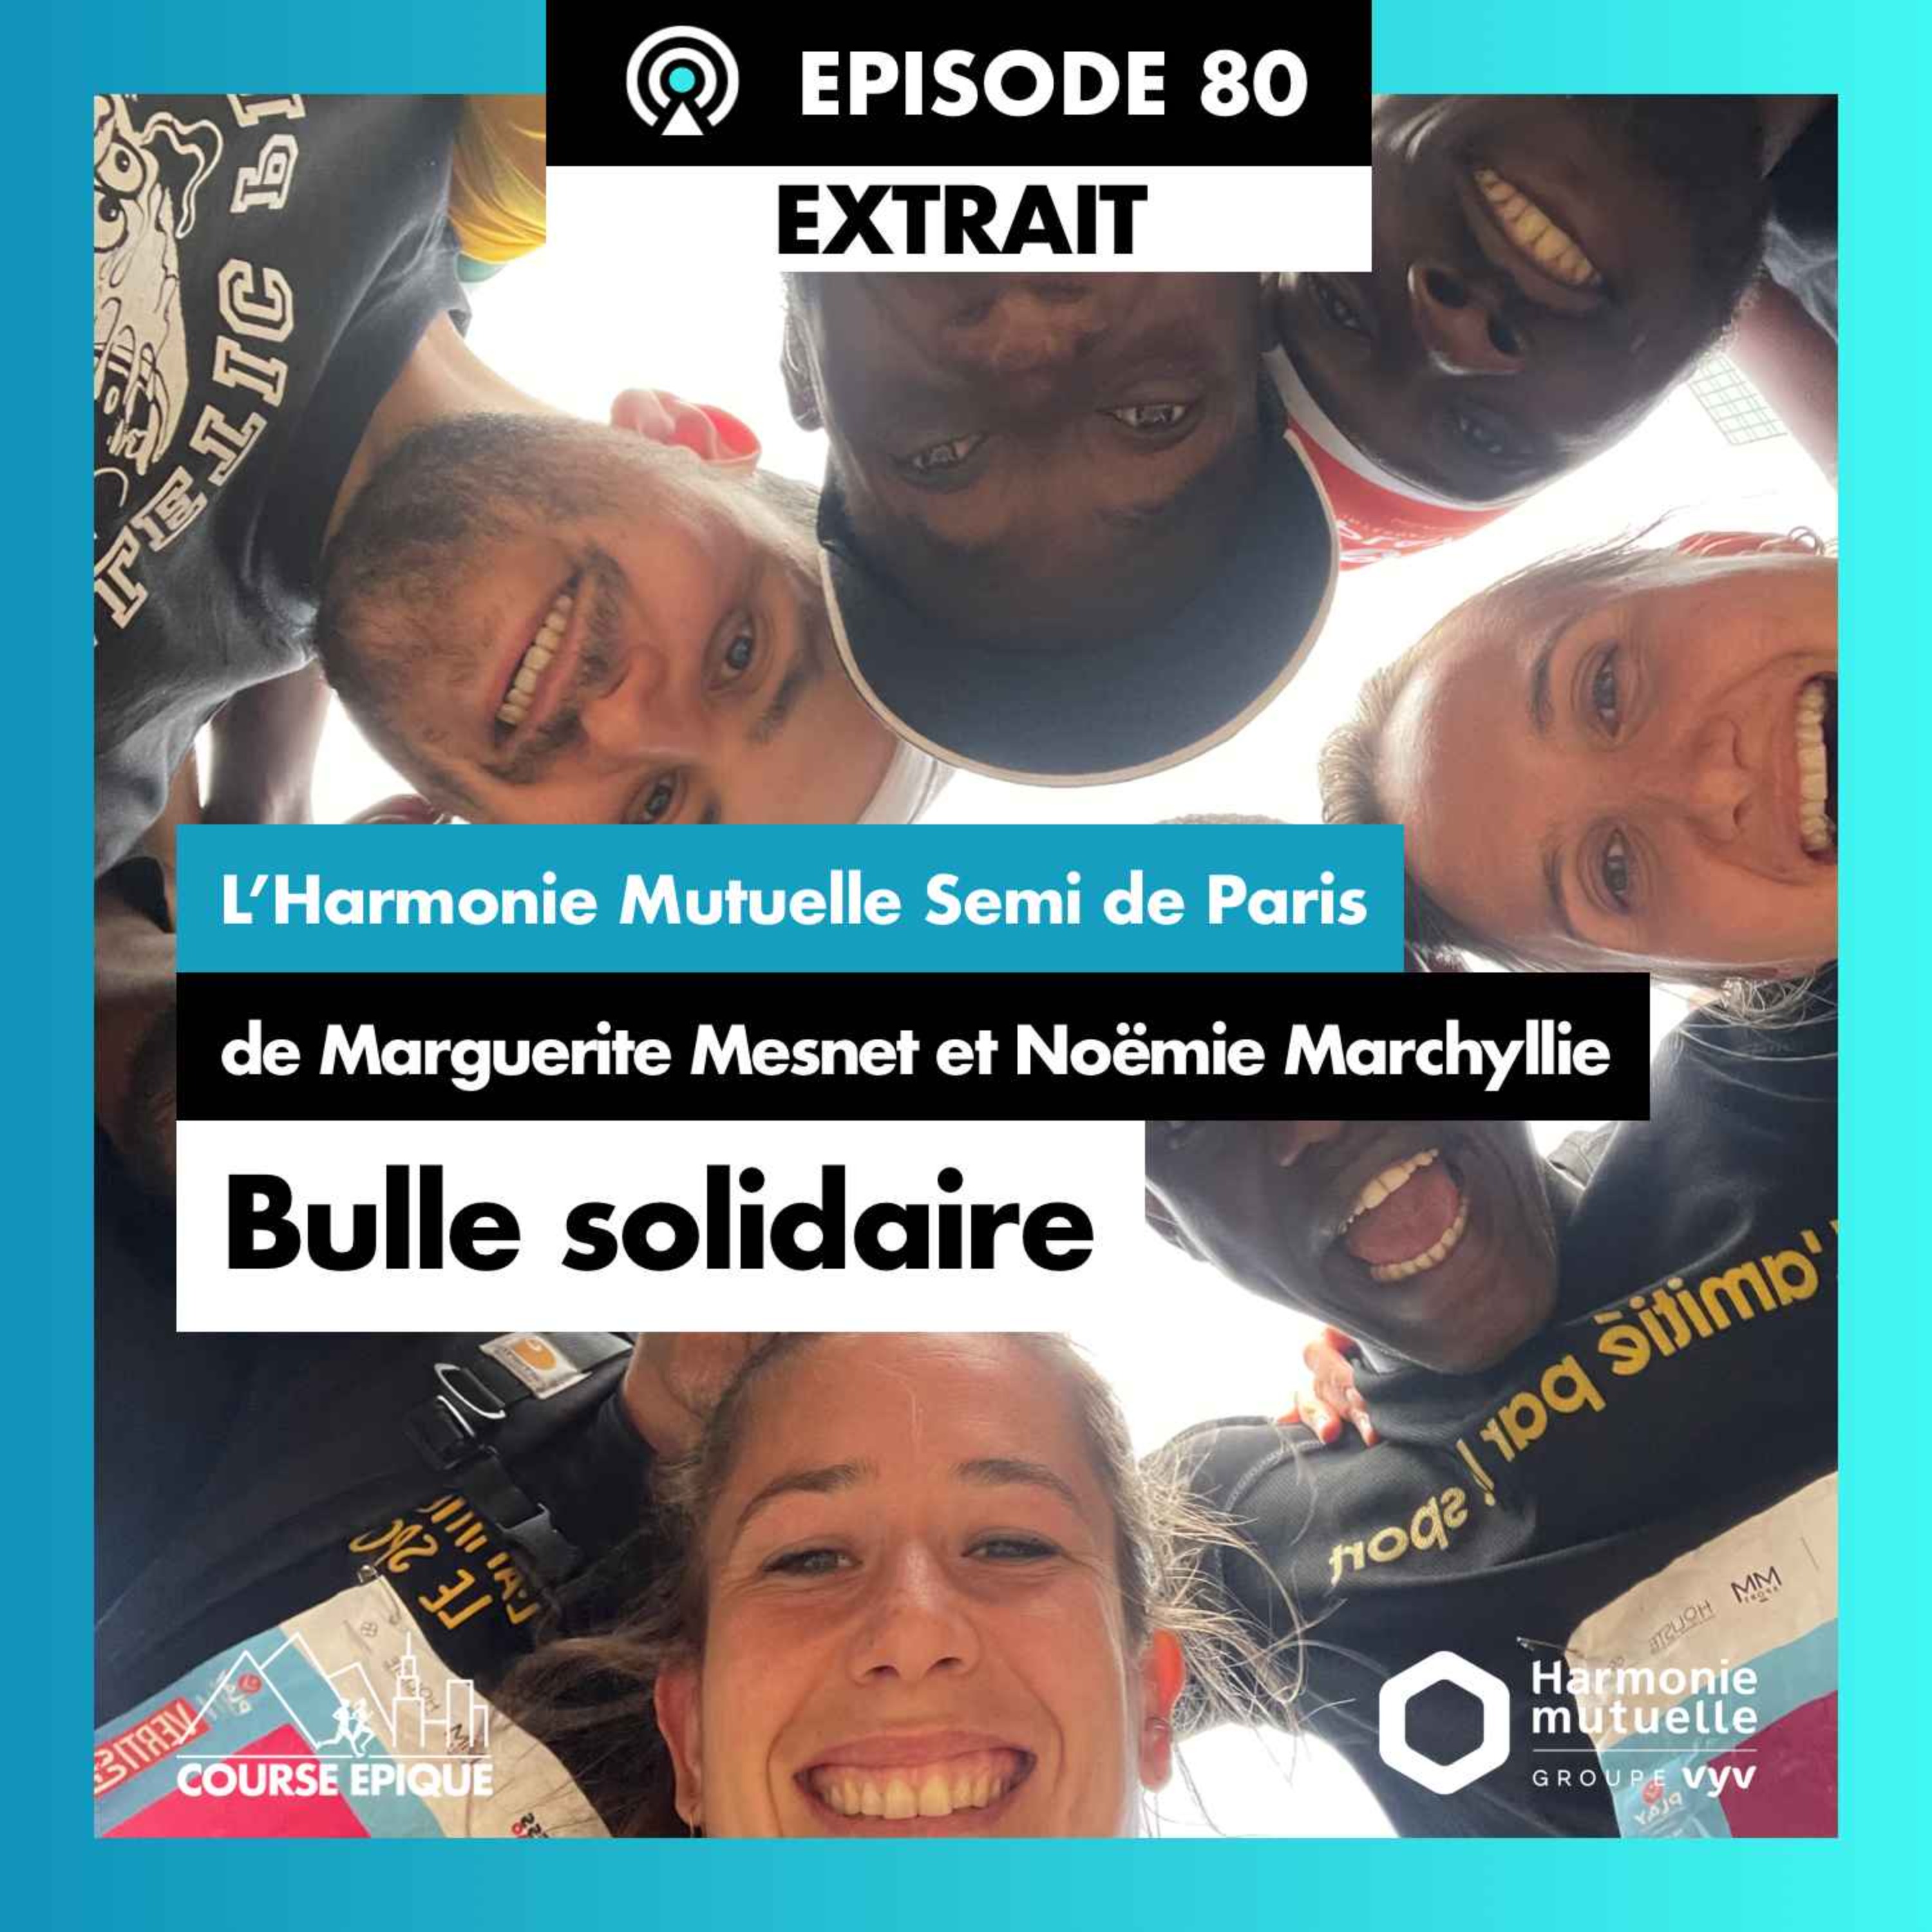 [EXTRAIT] "Bulle solidaire", le semi de Paris de Marguerite Mesnet et Noëmie Marchyllie